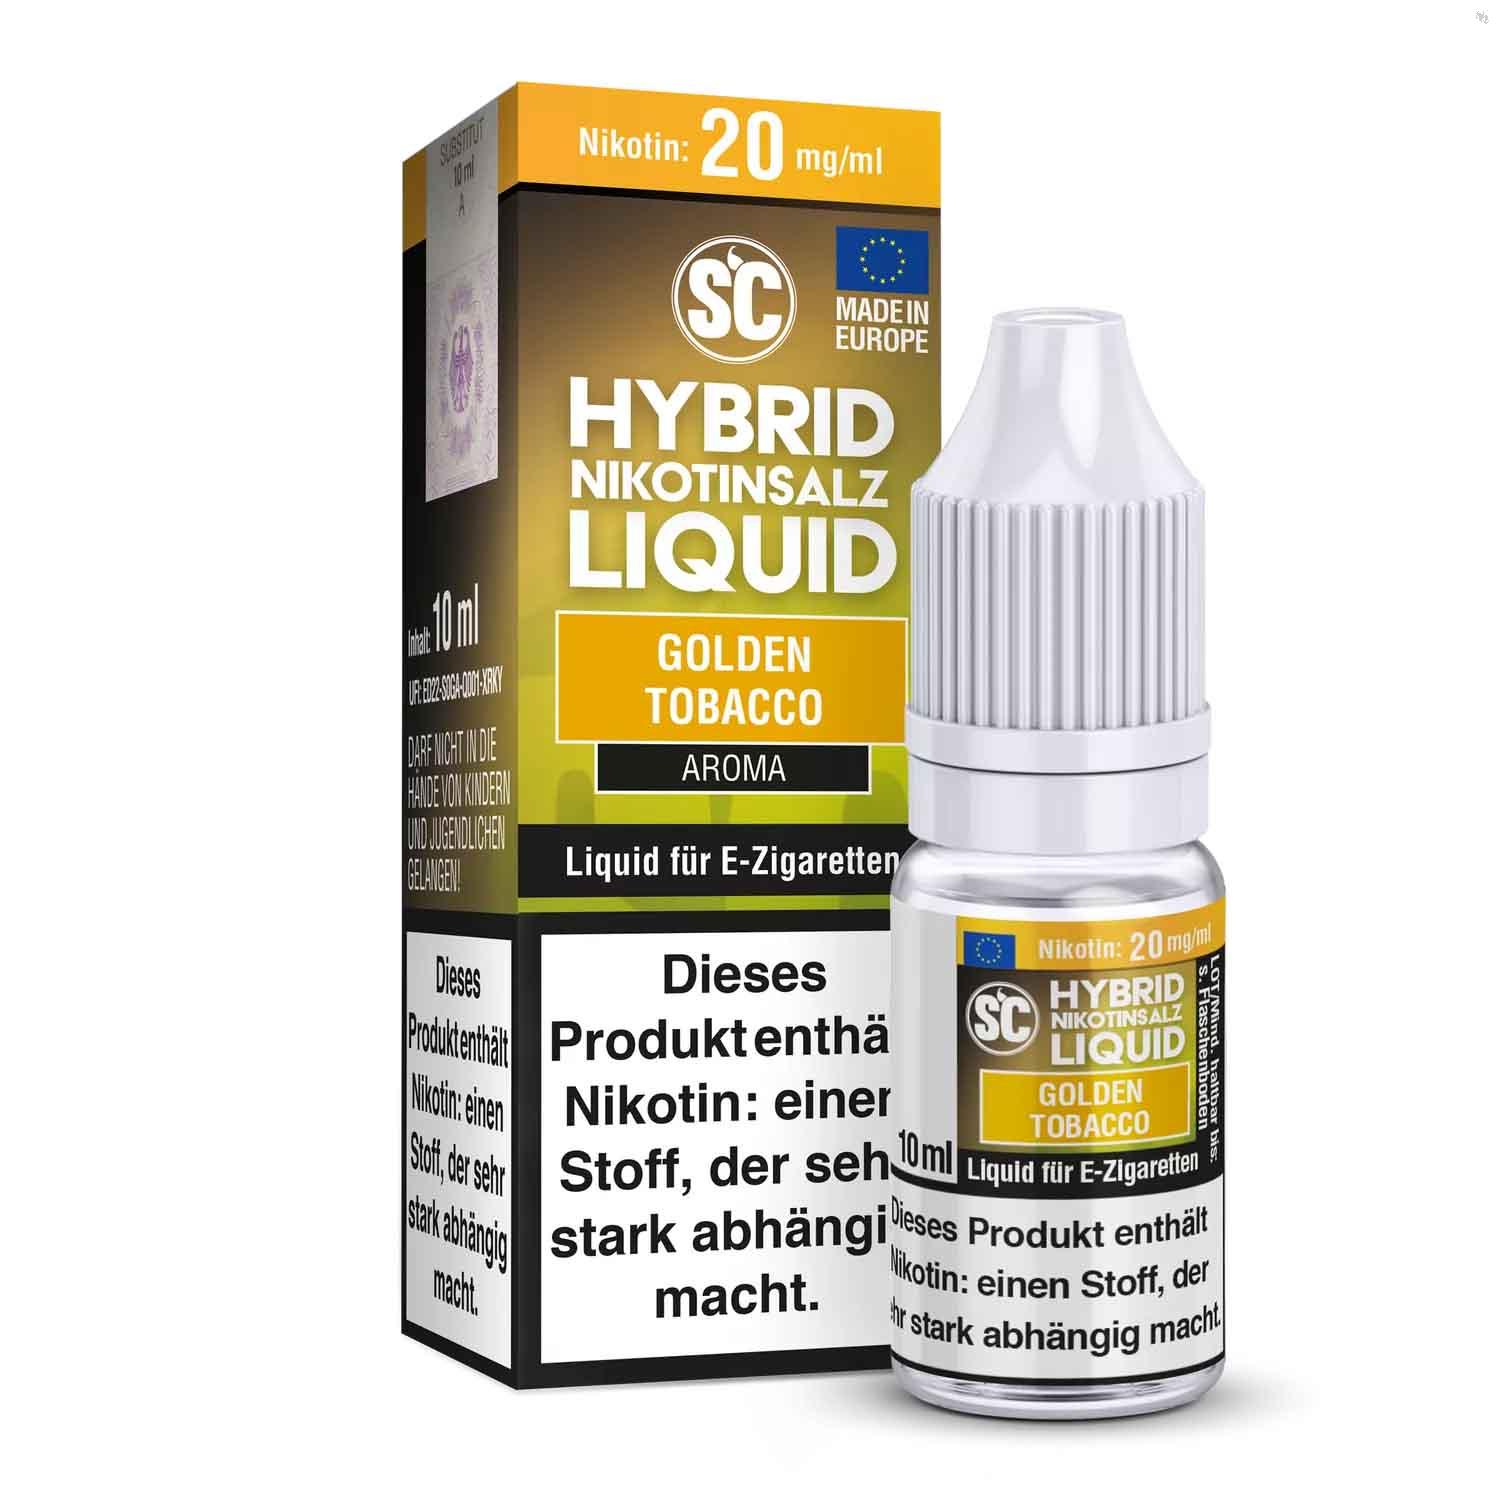 SC - Golden Tobacco Hybrid Nikotinsalz Liquid ✅ Günstig kaufen! 